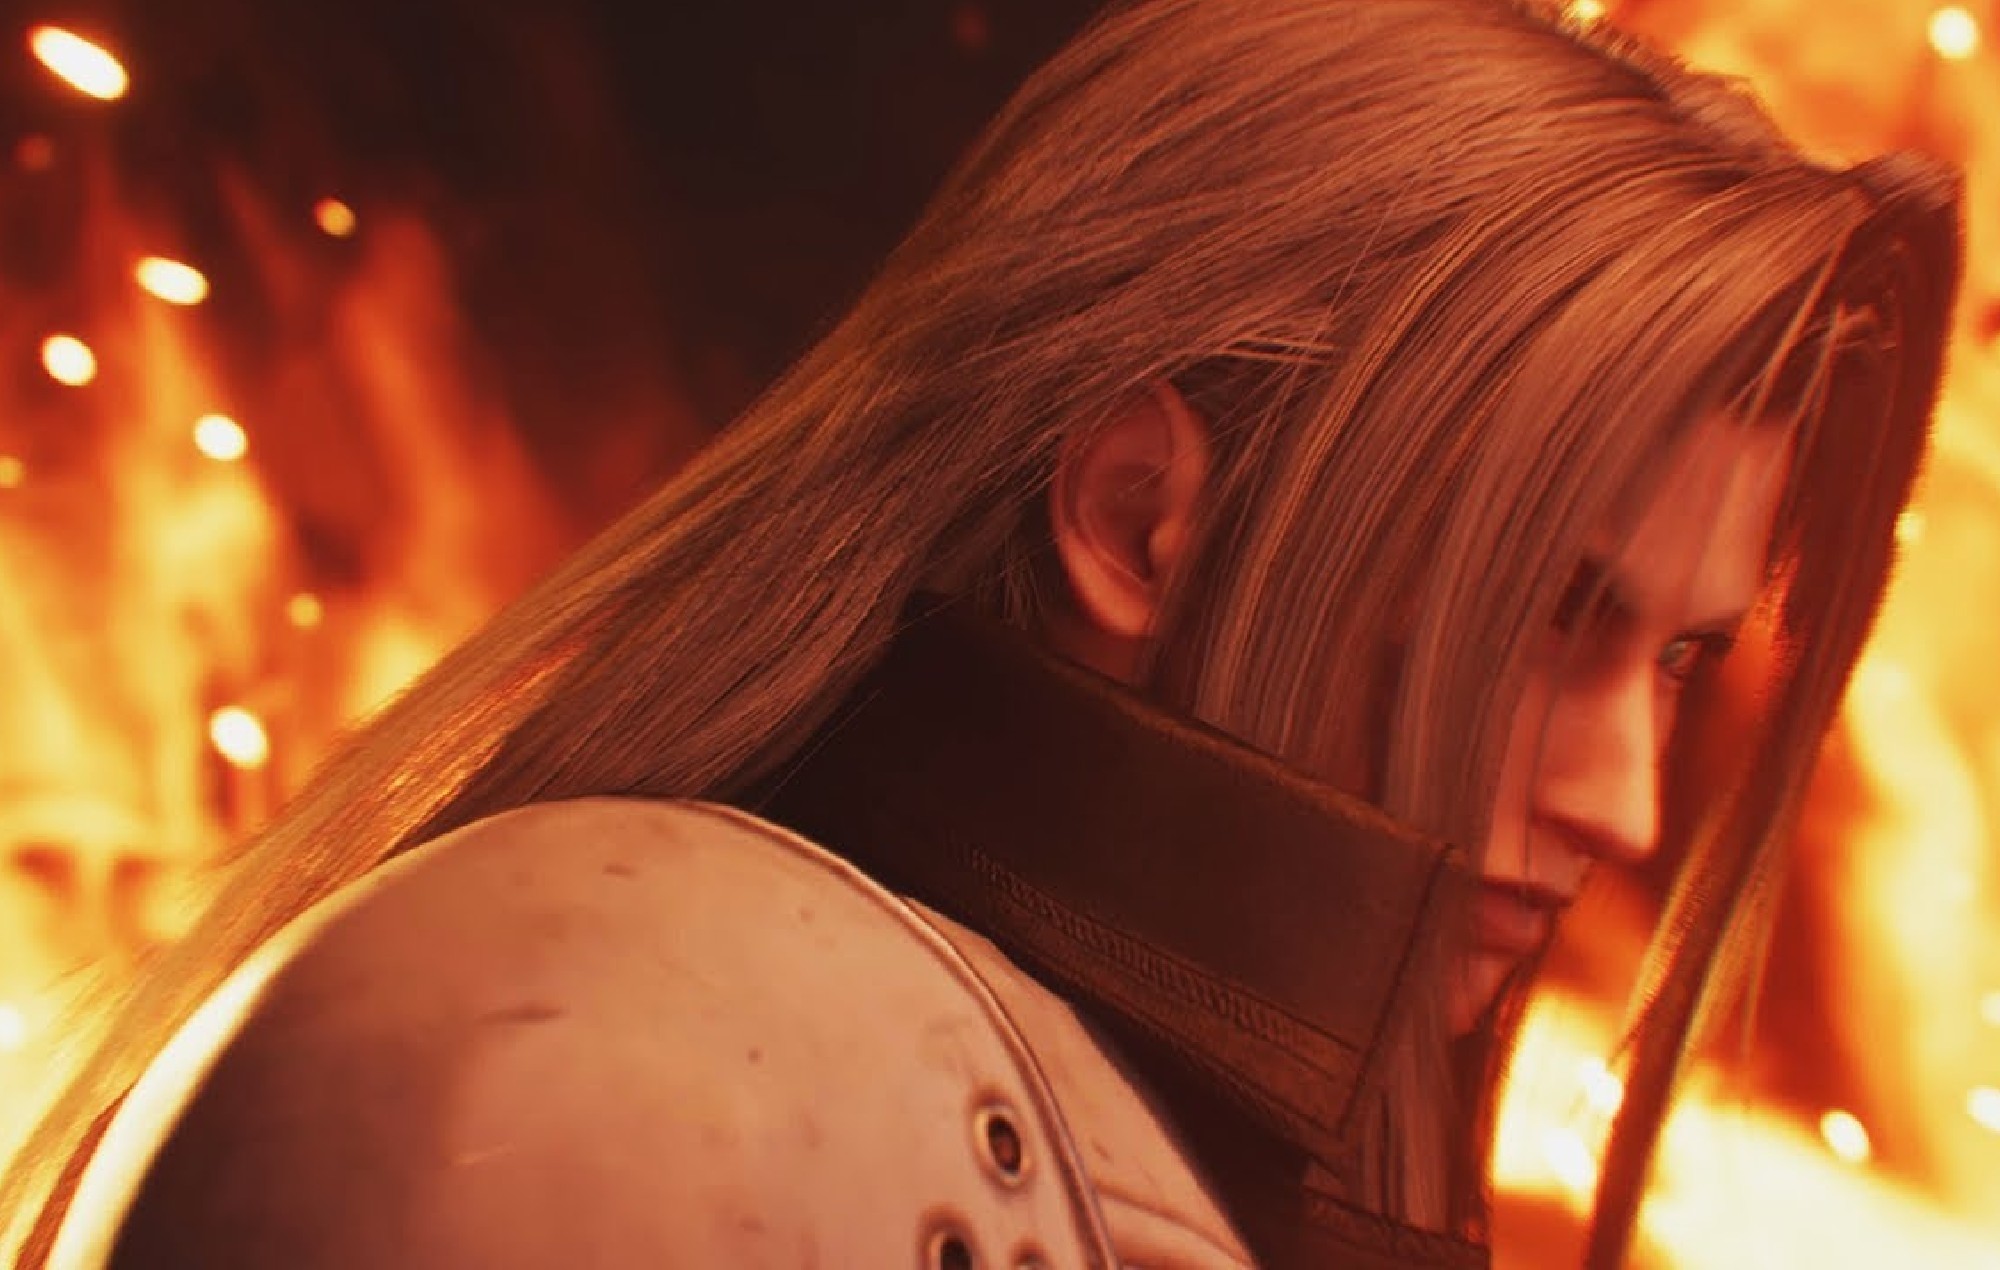 Les fans de "Final Fantasy 7" réagissent à l'histoire d'origine modifiée de Sephiroth